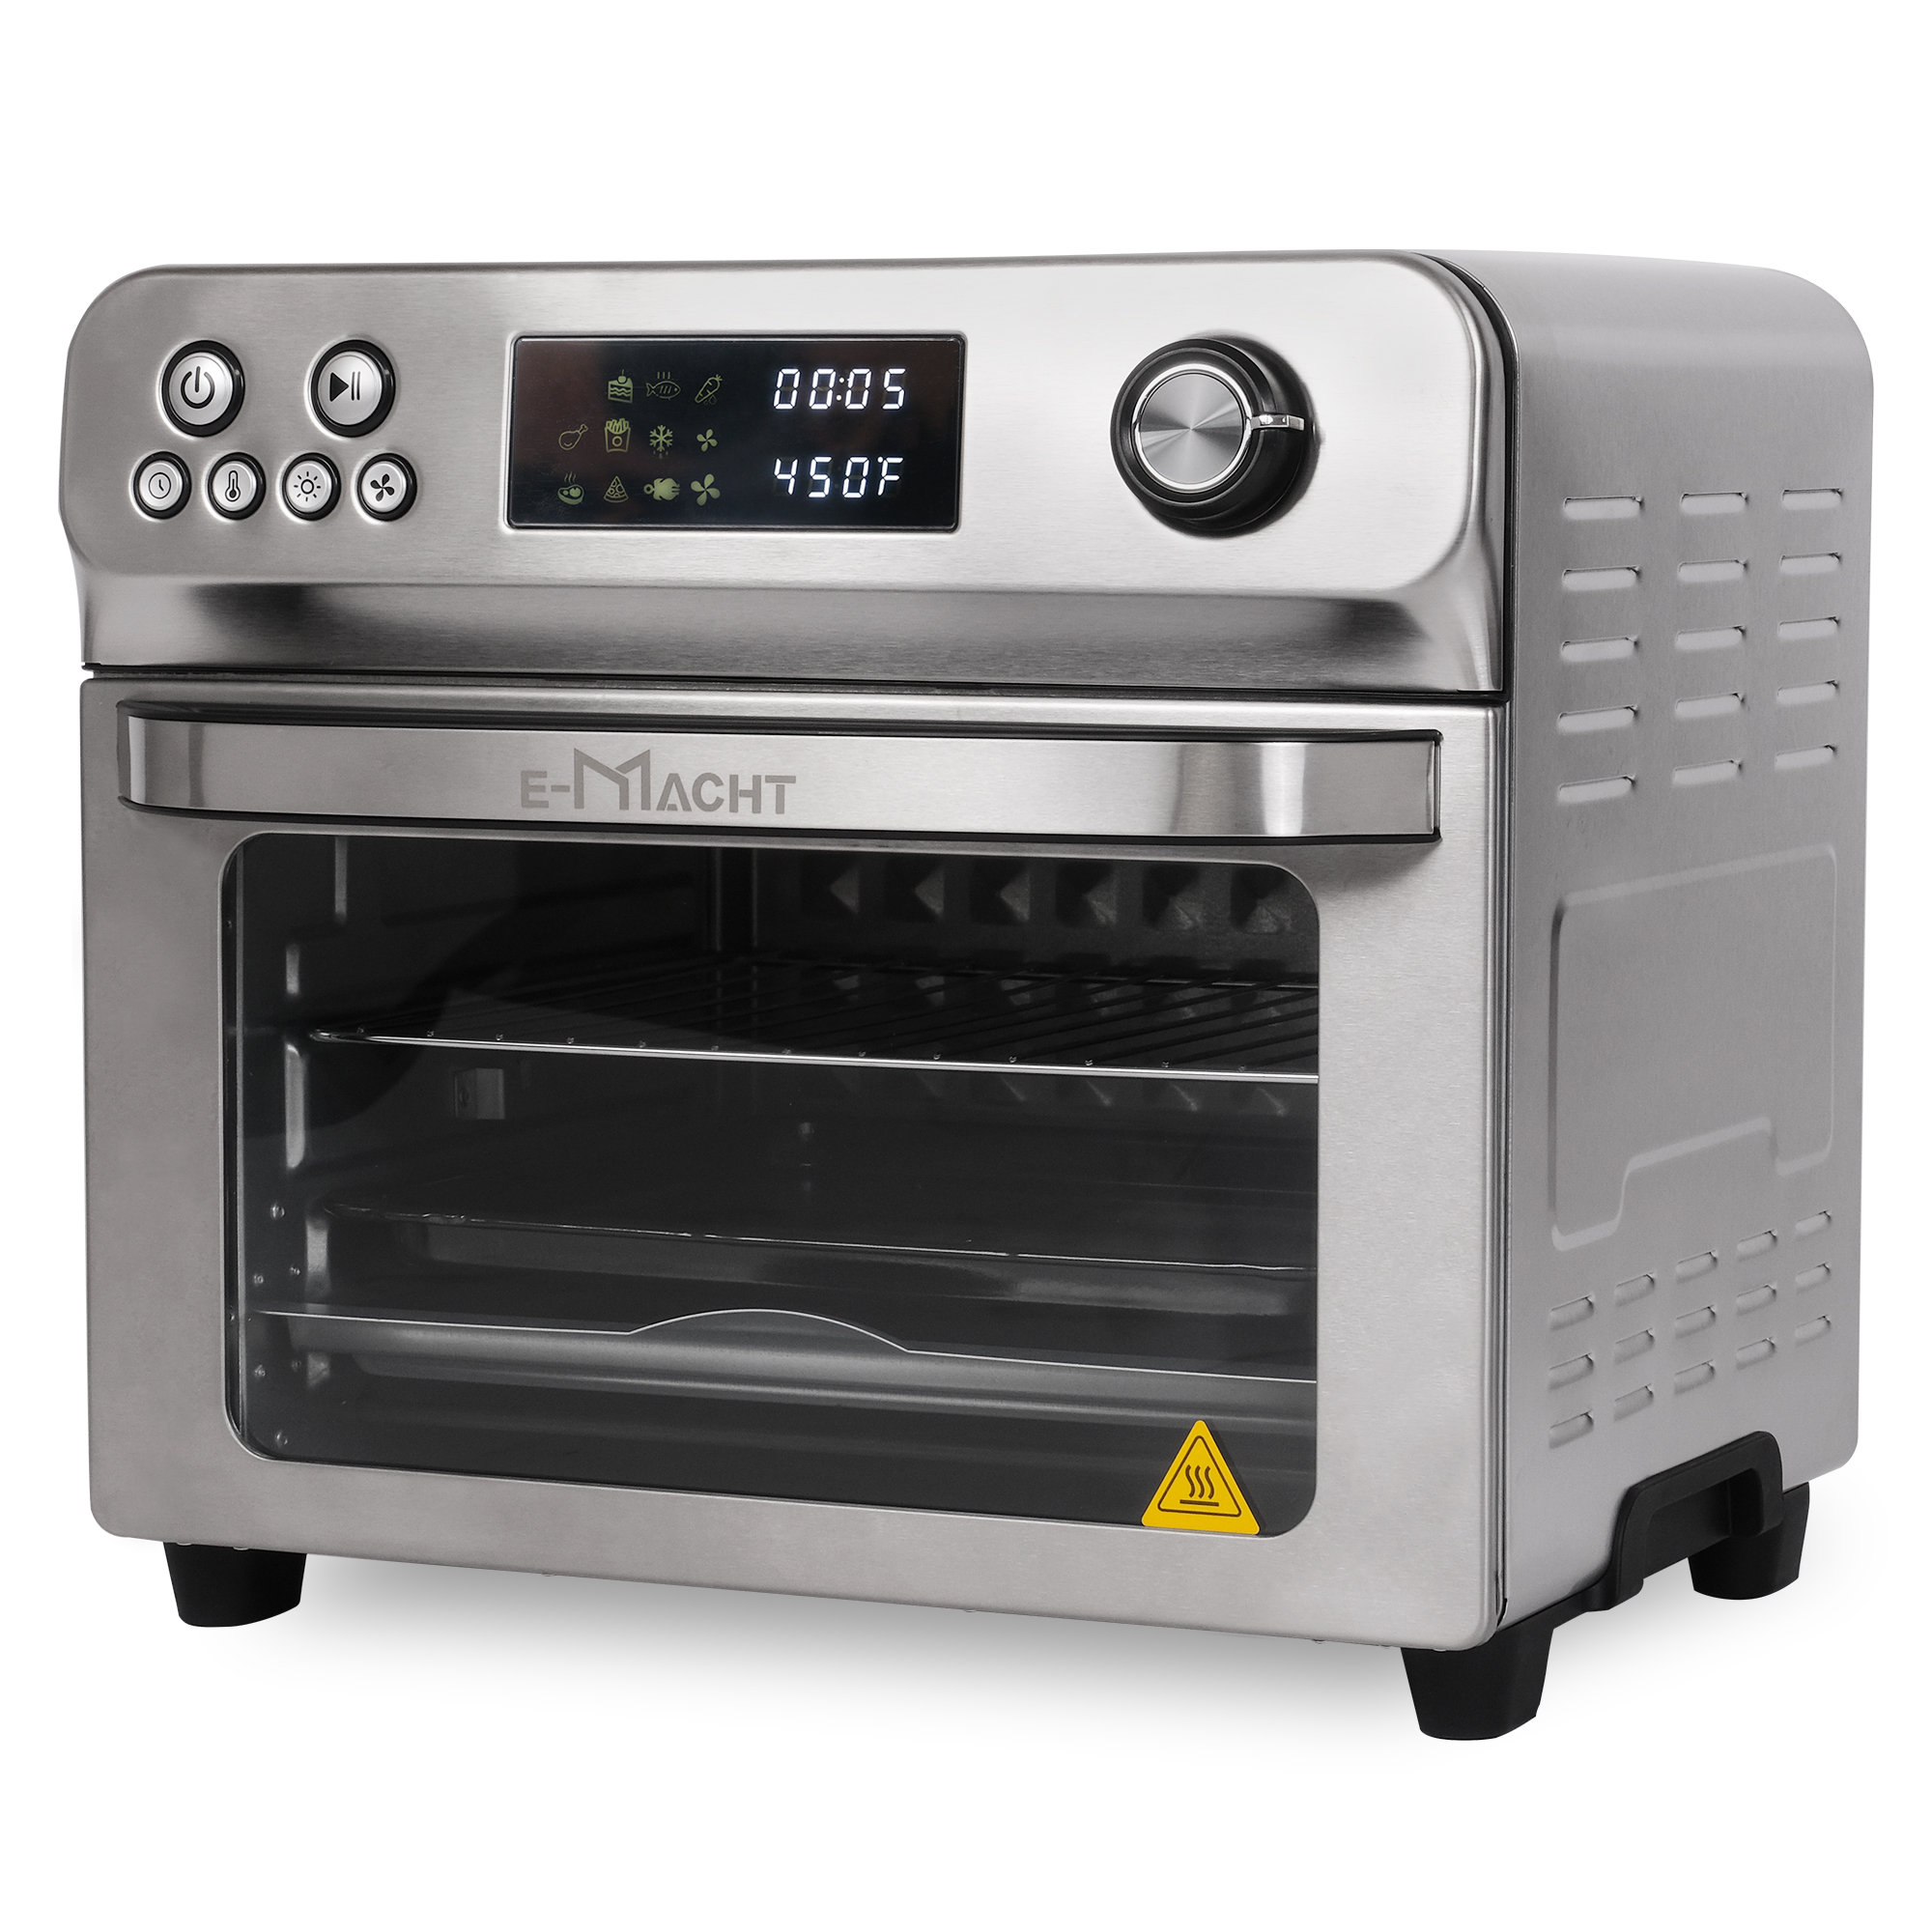 https://assets.wfcdn.com/im/25323242/compr-r85/2313/231358990/24-qt-air-fryer-toaster-oven.jpg